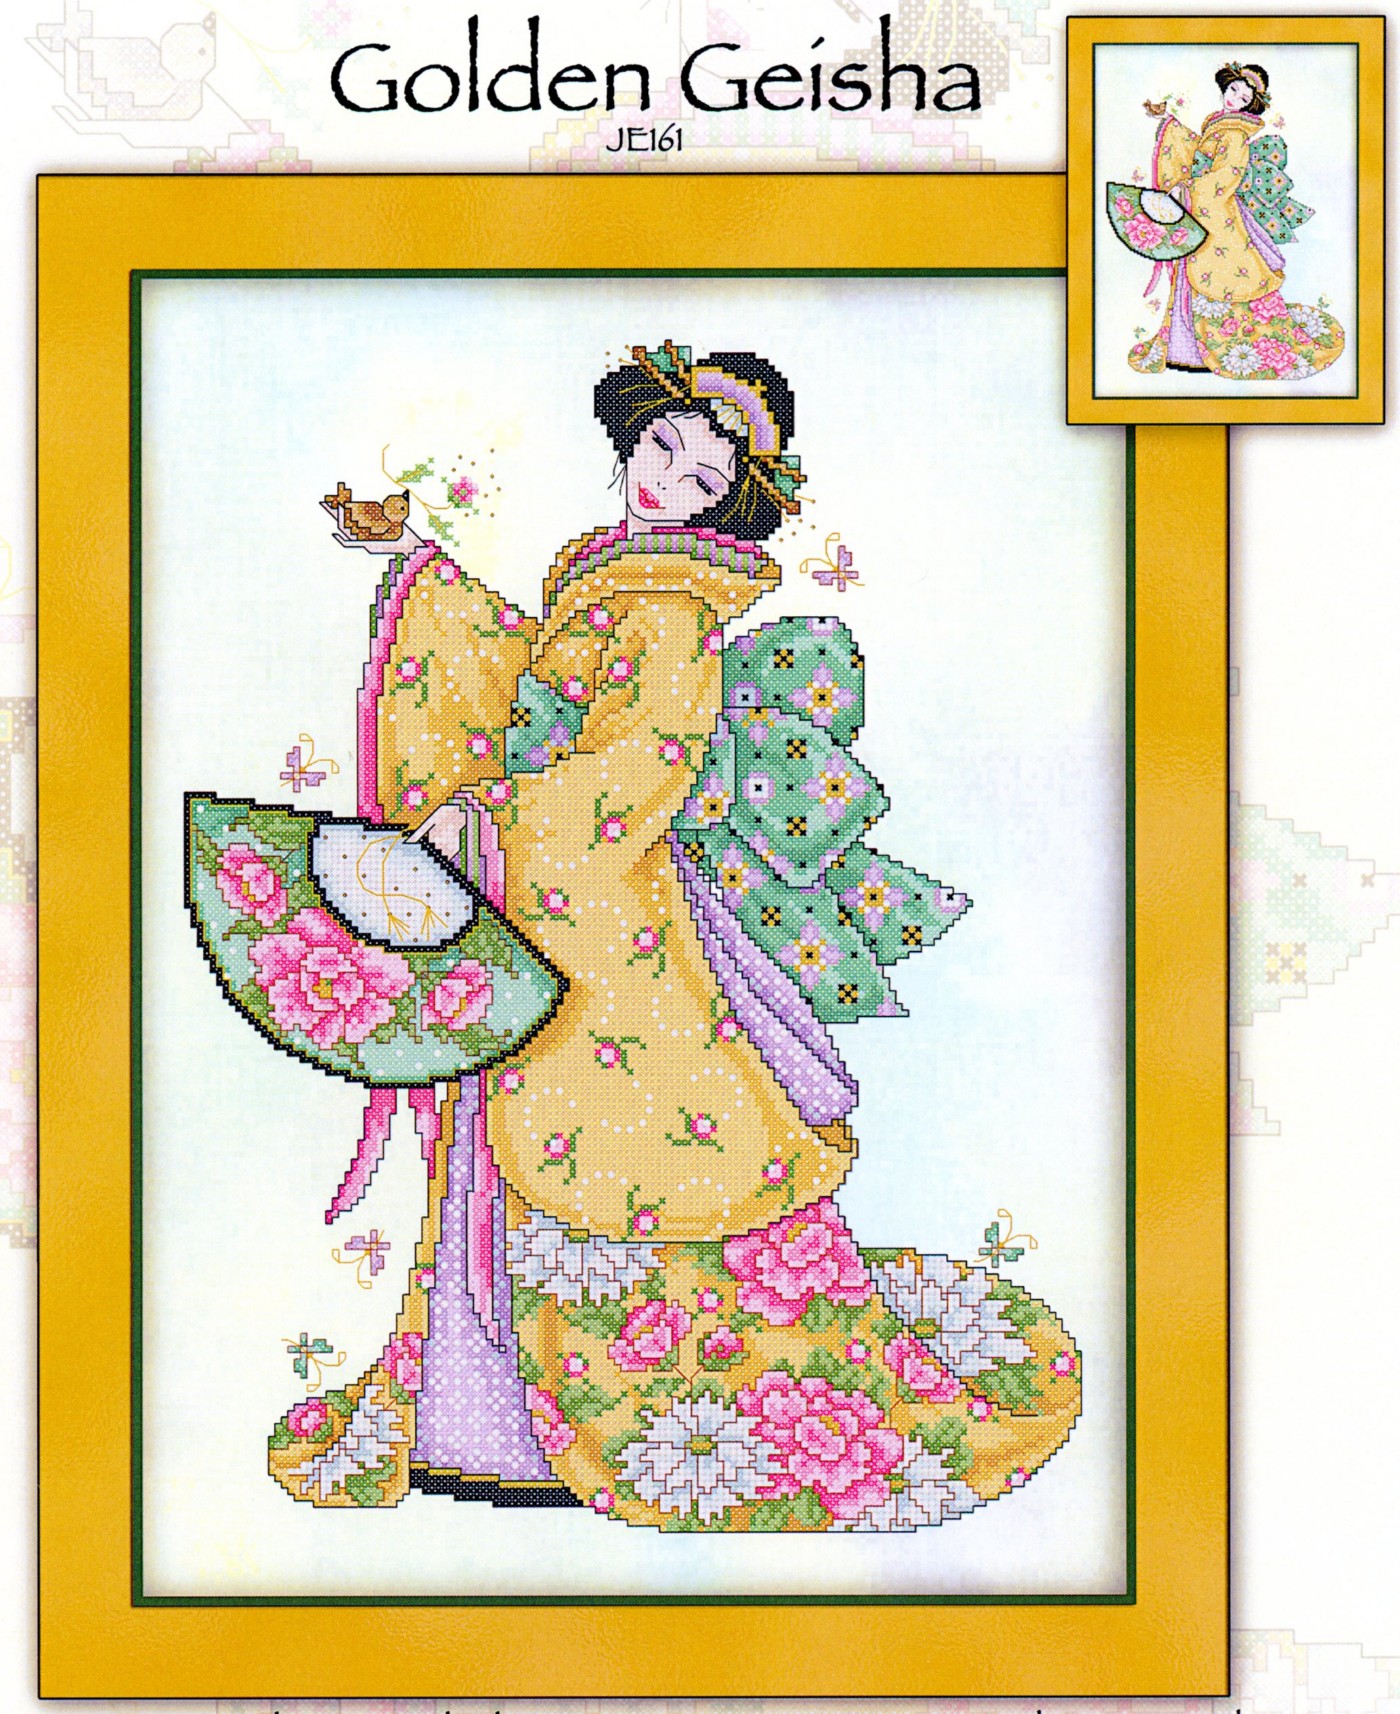 Golden geisha